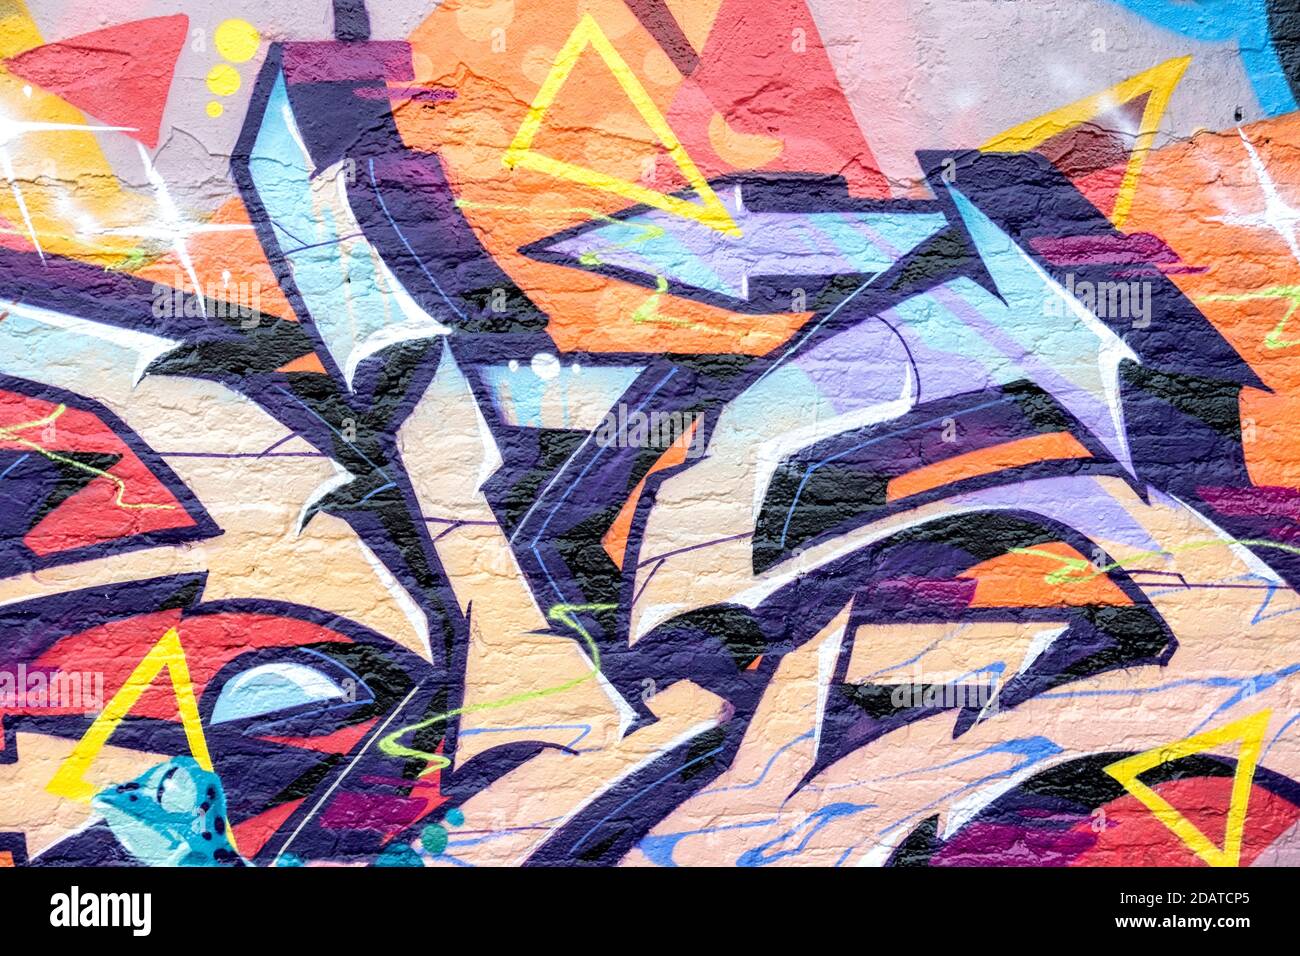 Graffiti de pared genérico colorido y abstracto Foto de stock